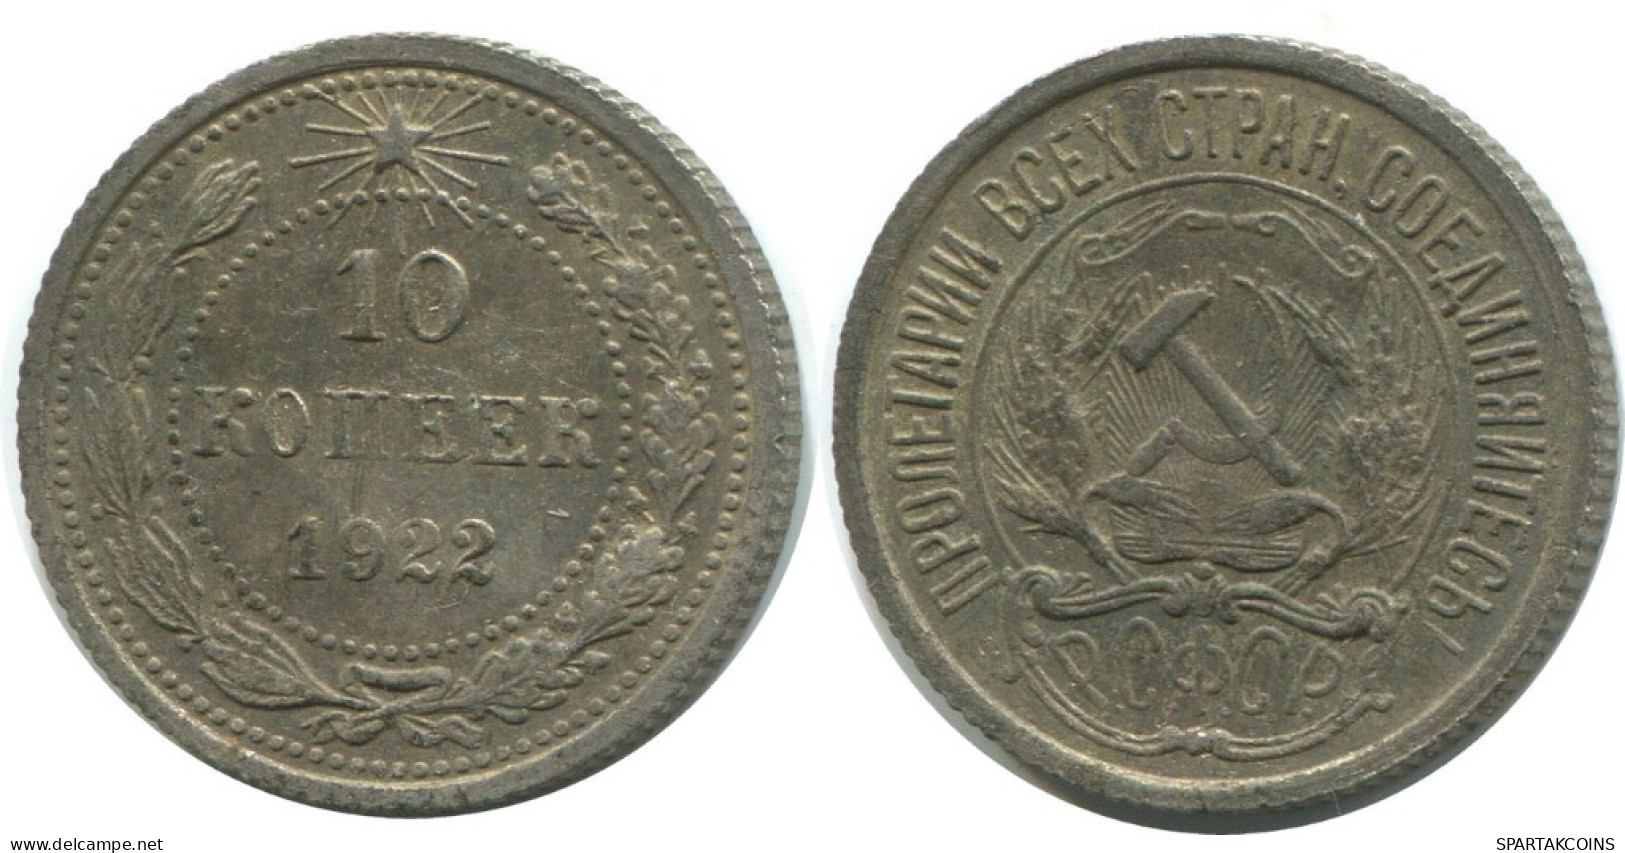 10 KOPEKS 1923 RUSSLAND RUSSIA RSFSR SILBER Münze HIGH GRADE #AE864.4.D.A - Russie